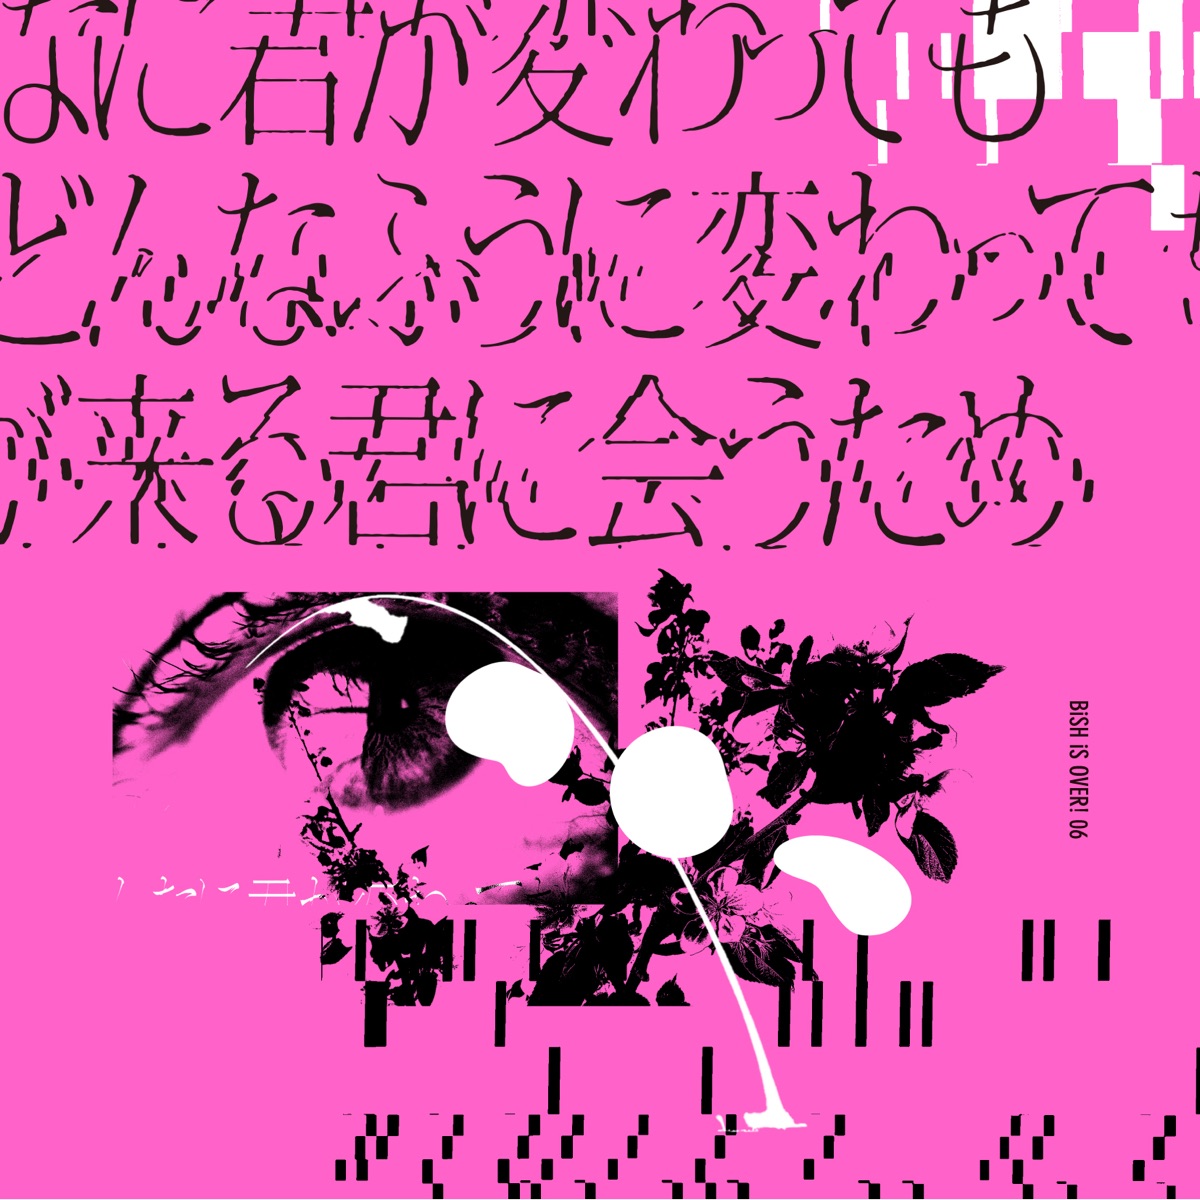 Cover art for『BiSH - Donna ni Kimi ga Kawattemo Boku ga Donna Fuu ni Kawattemo Ashita ga Kuru Kimi ni Au Tame』from the release『Donna ni Kimi ga Kawattemo Boku ga Donna Fuu ni Kawattemo Ashita ga Kuru Kimi ni Au Tame』